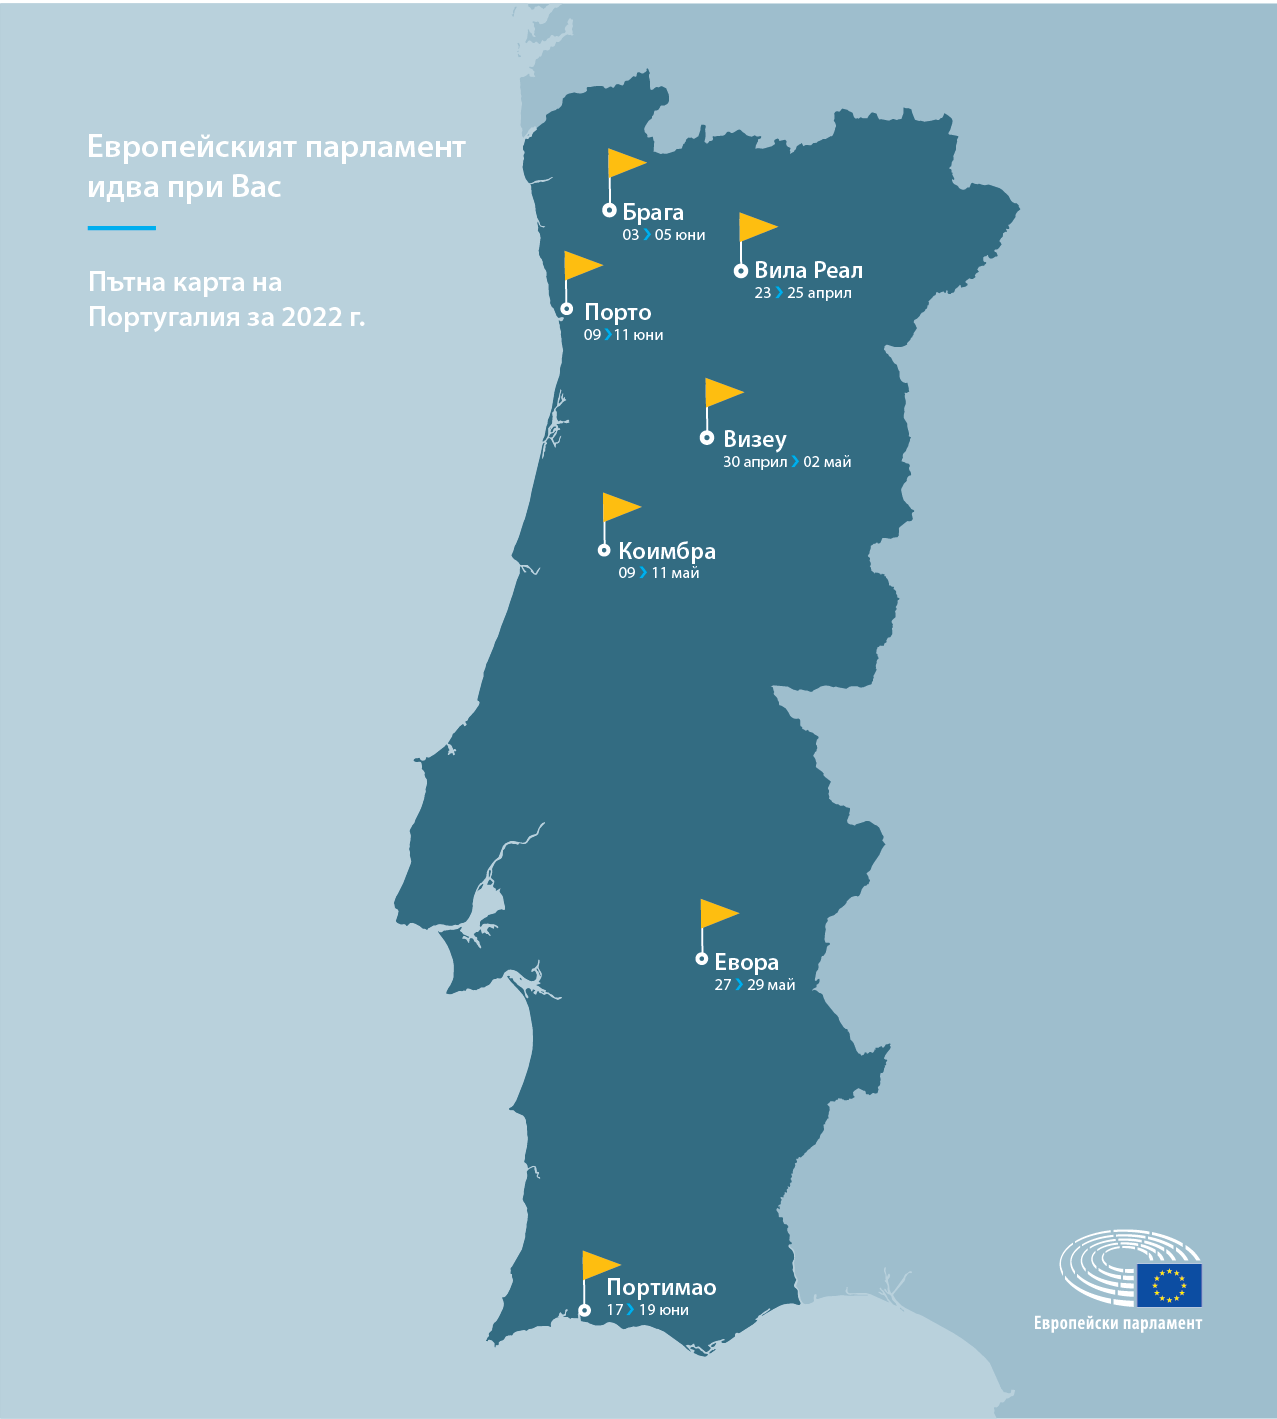 Пътна карта на Португалия за 2022 г.